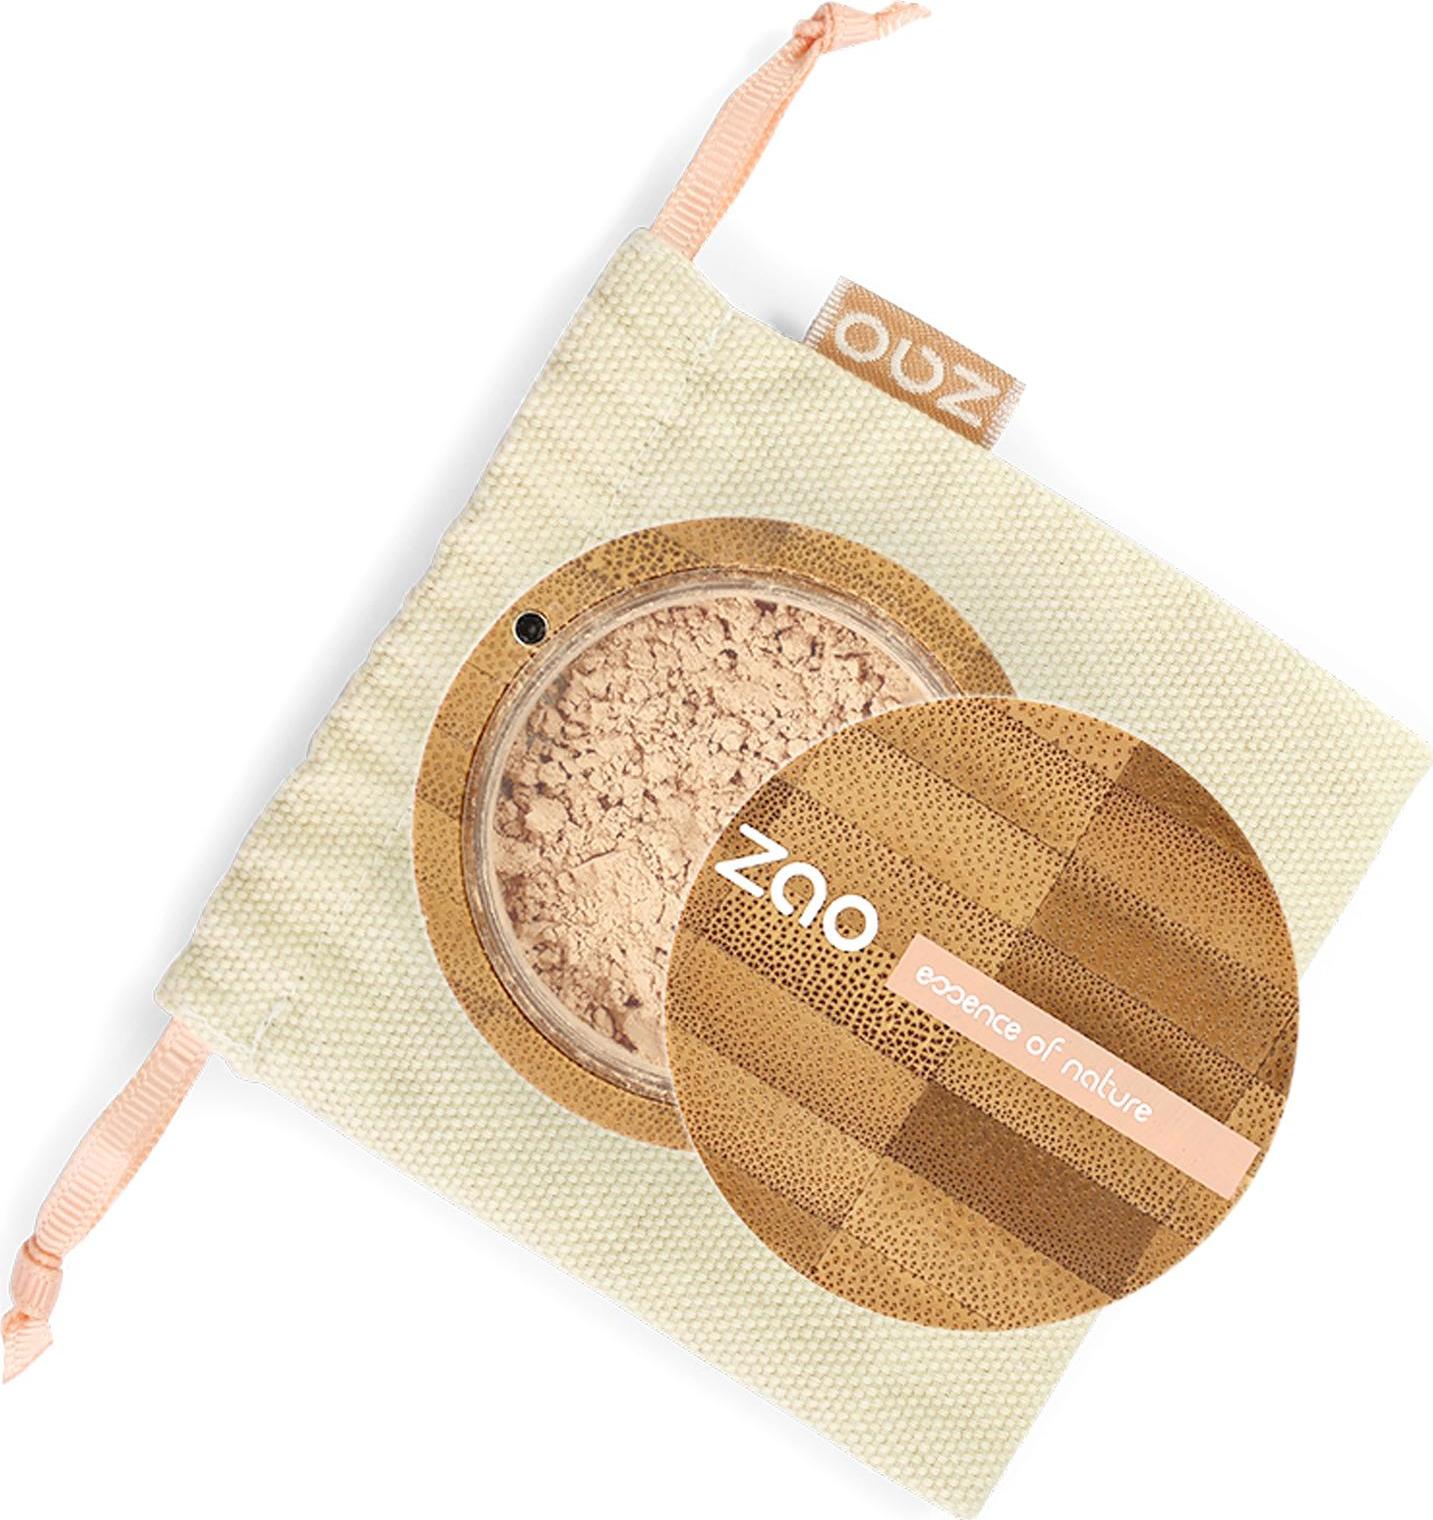 ZAO Hedvábný minerální make-up 509 Sand beige 15 g bambusový obal